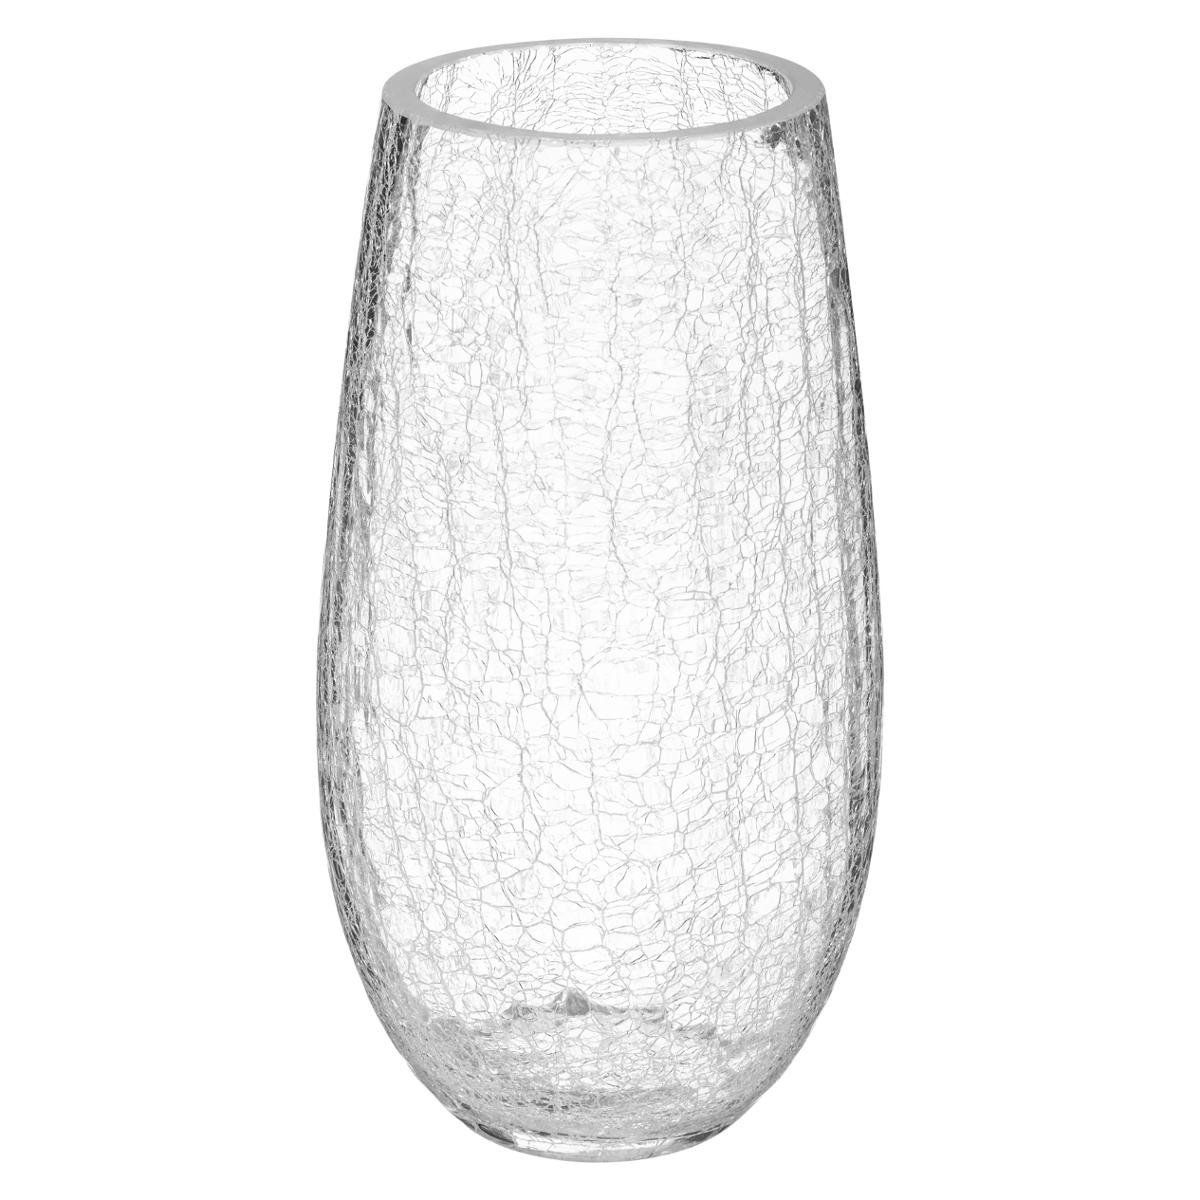 Atmosphera váza s rozbitým skleněným motivem, průměr 14 cm - EMAKO.CZ s.r.o.